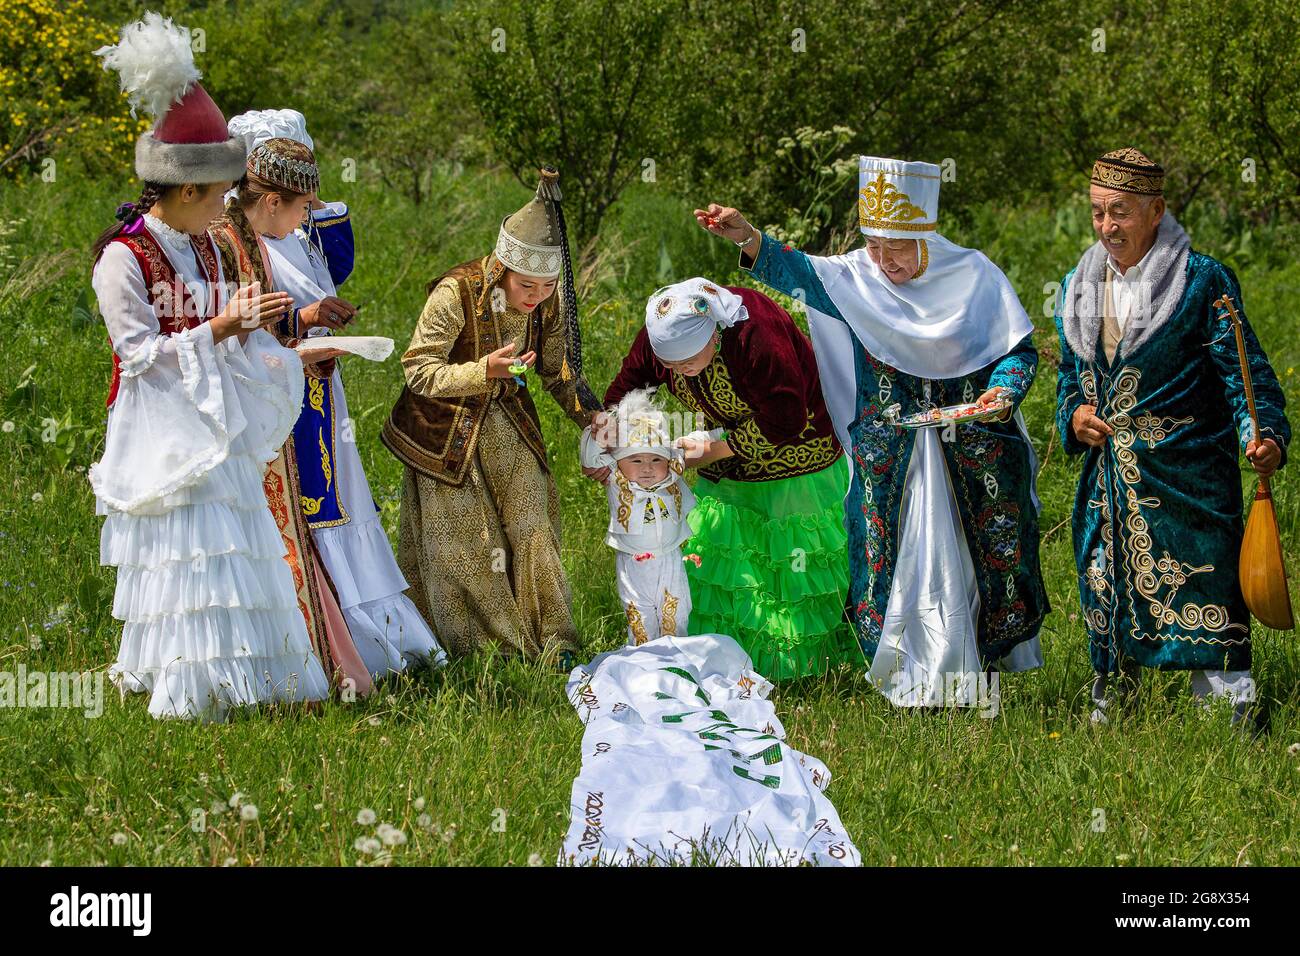 Peuple kazakh montrant la tradition locale de Tusau Kesu qui symbolise une cérémonie qui accompagne les premières étapes d'un enfant, à Almaty, Kazakhstan. Banque D'Images